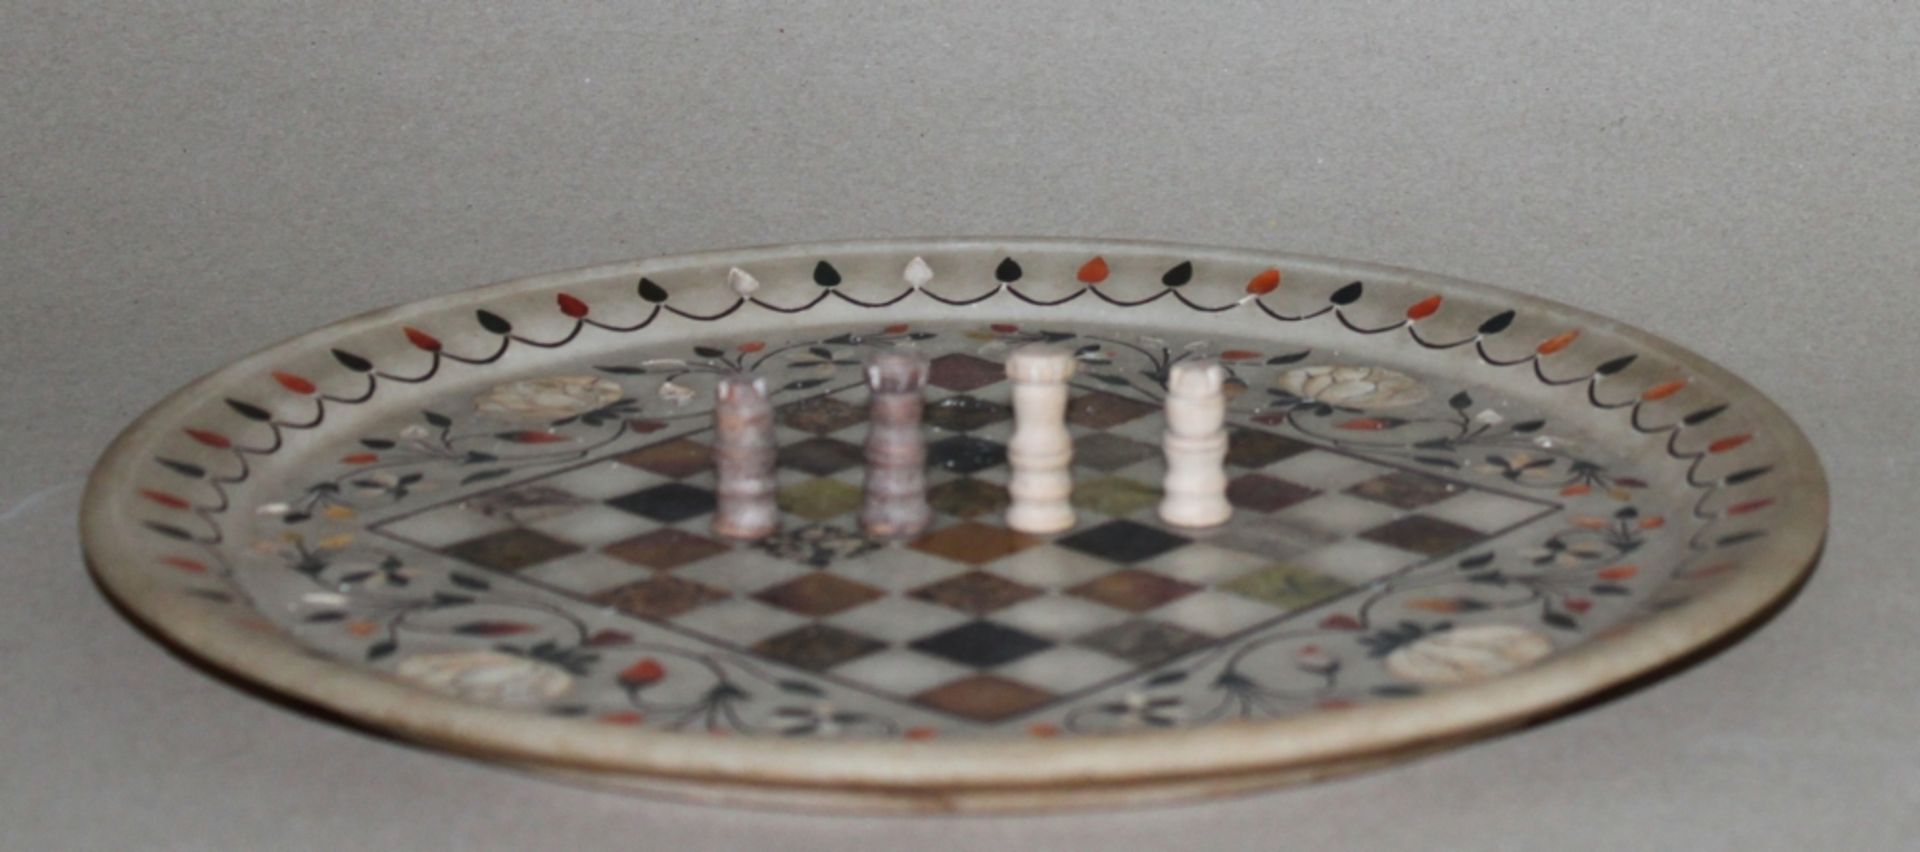 Europa. Schachfiguren aus Holz mit Schachbrett aus Stein. Eine Partei in dunkelbraun, die andere